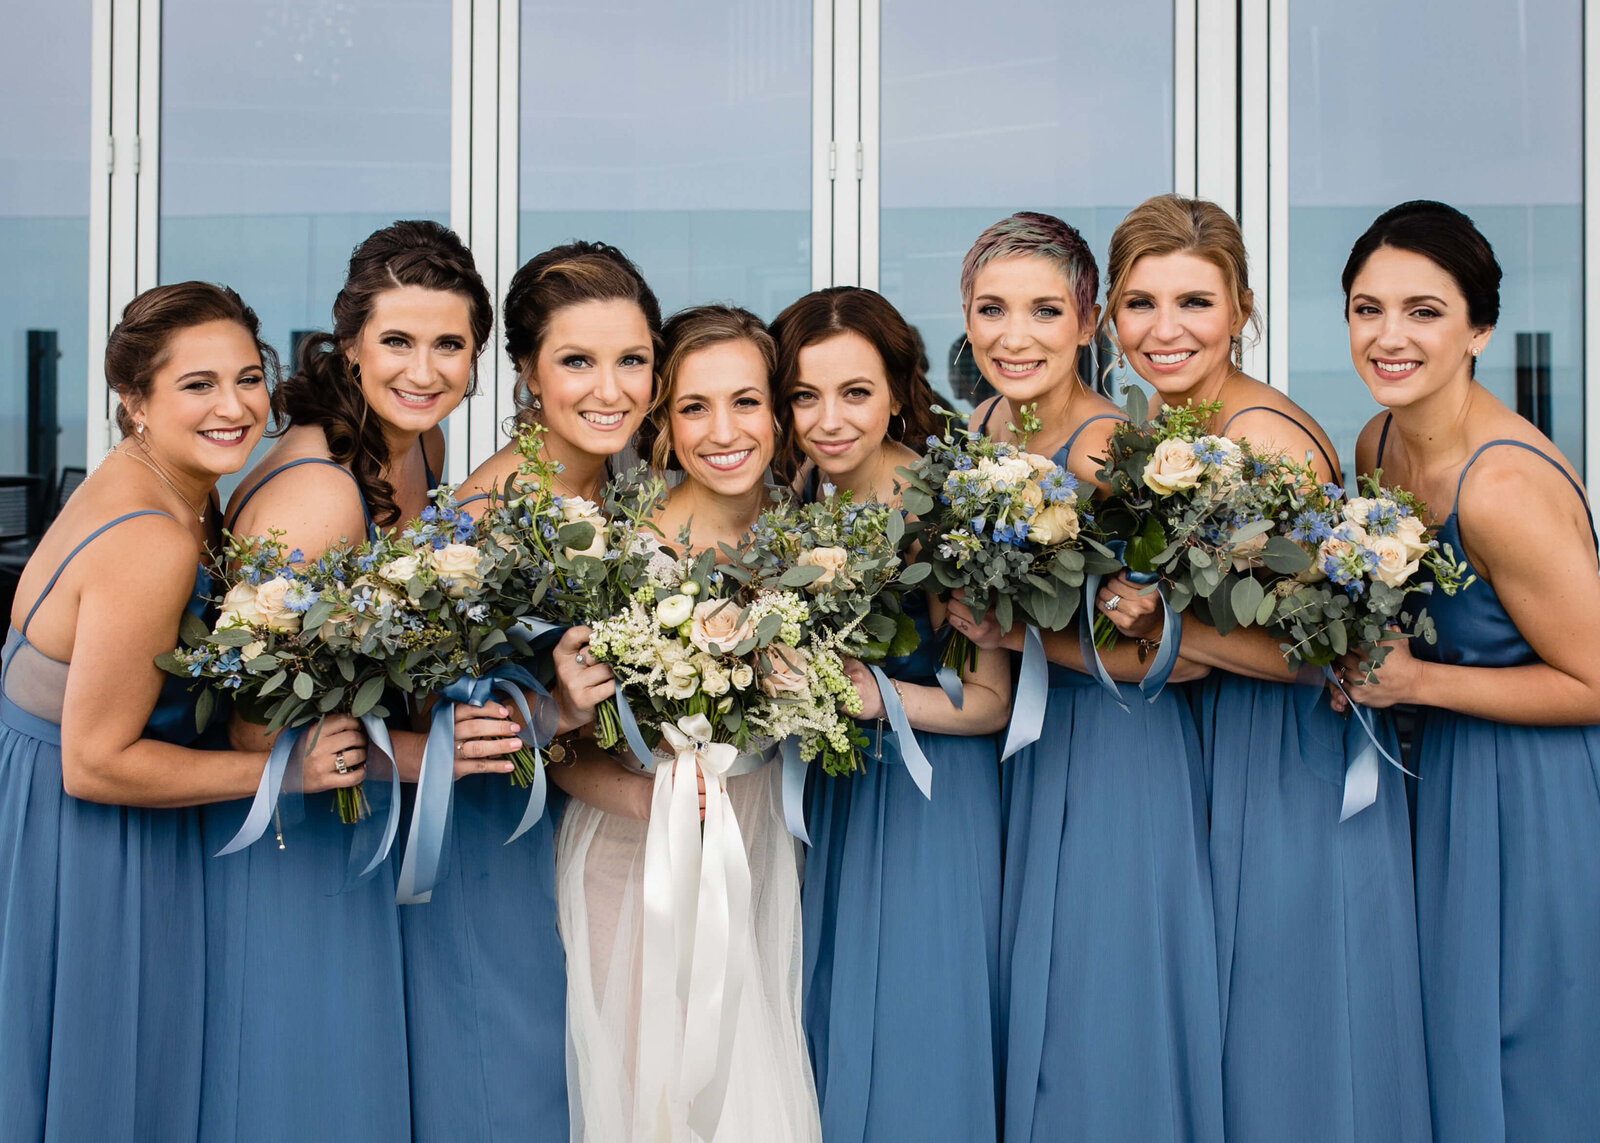 Ohio bridesmaids all in blue dresses